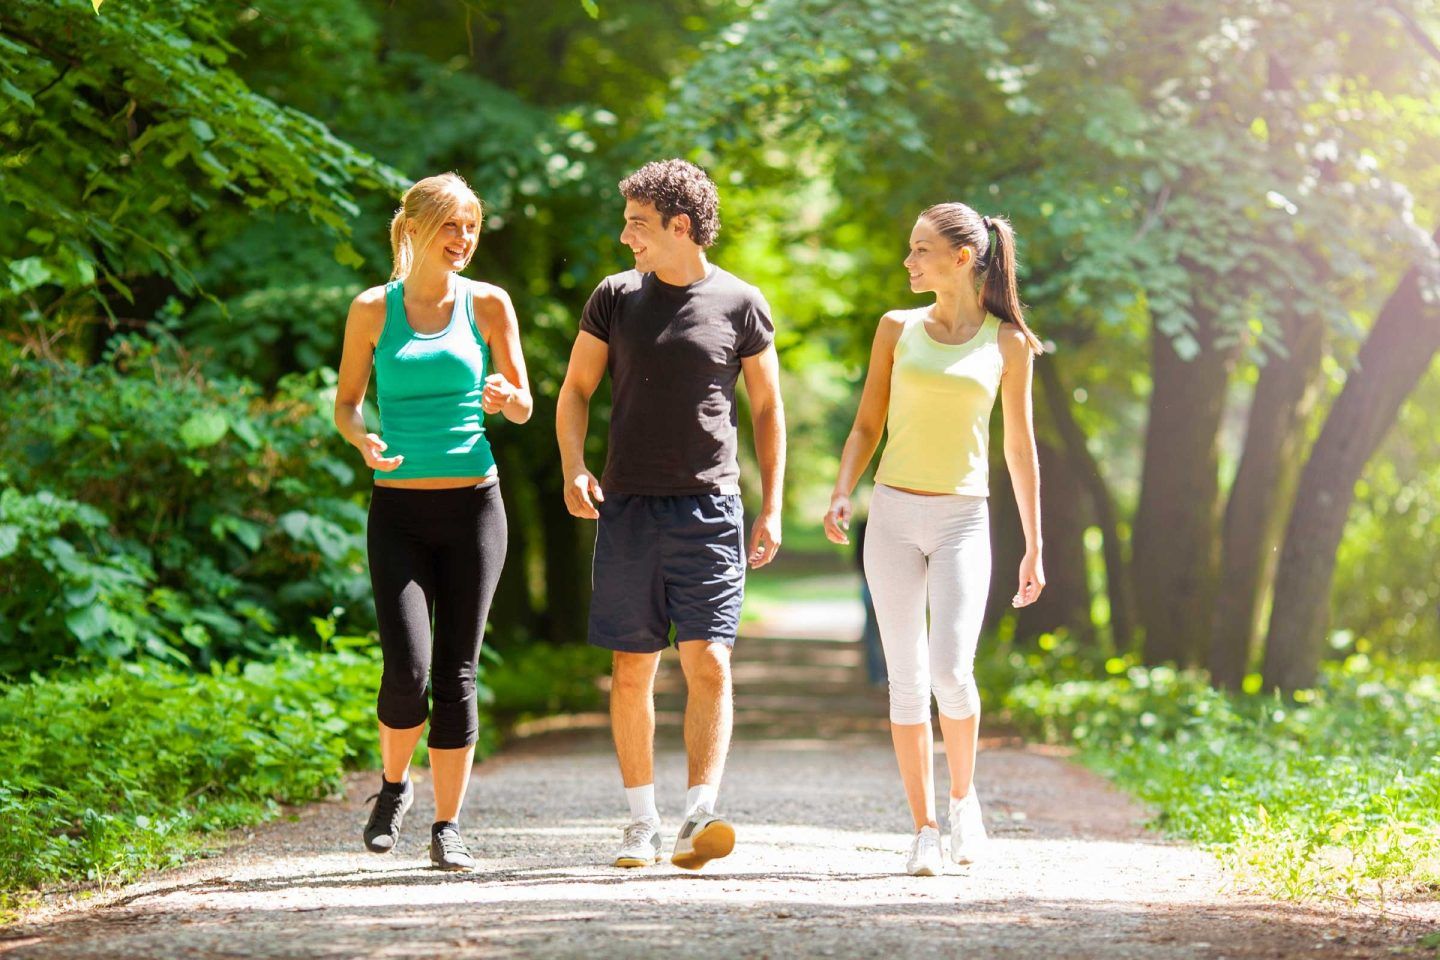 كم يحرق المشي من السعرات الحرارية وما تأثير الوزن والطول؟